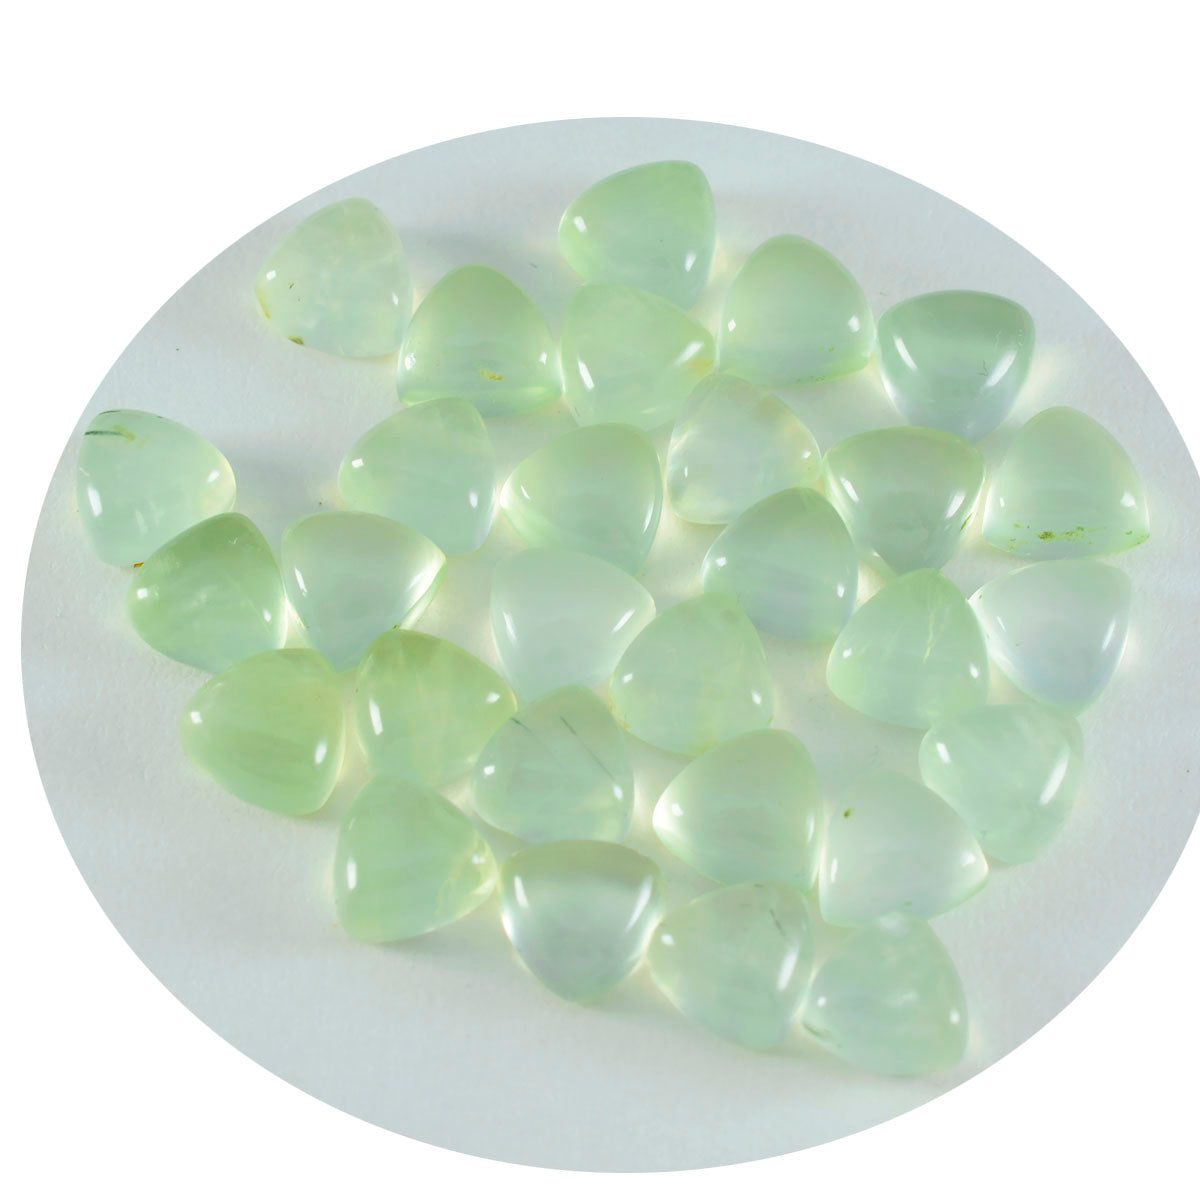 riyogems 1 pieza cabujón de prehnita verde 6x6 mm forma de billón piedra preciosa suelta de buena calidad